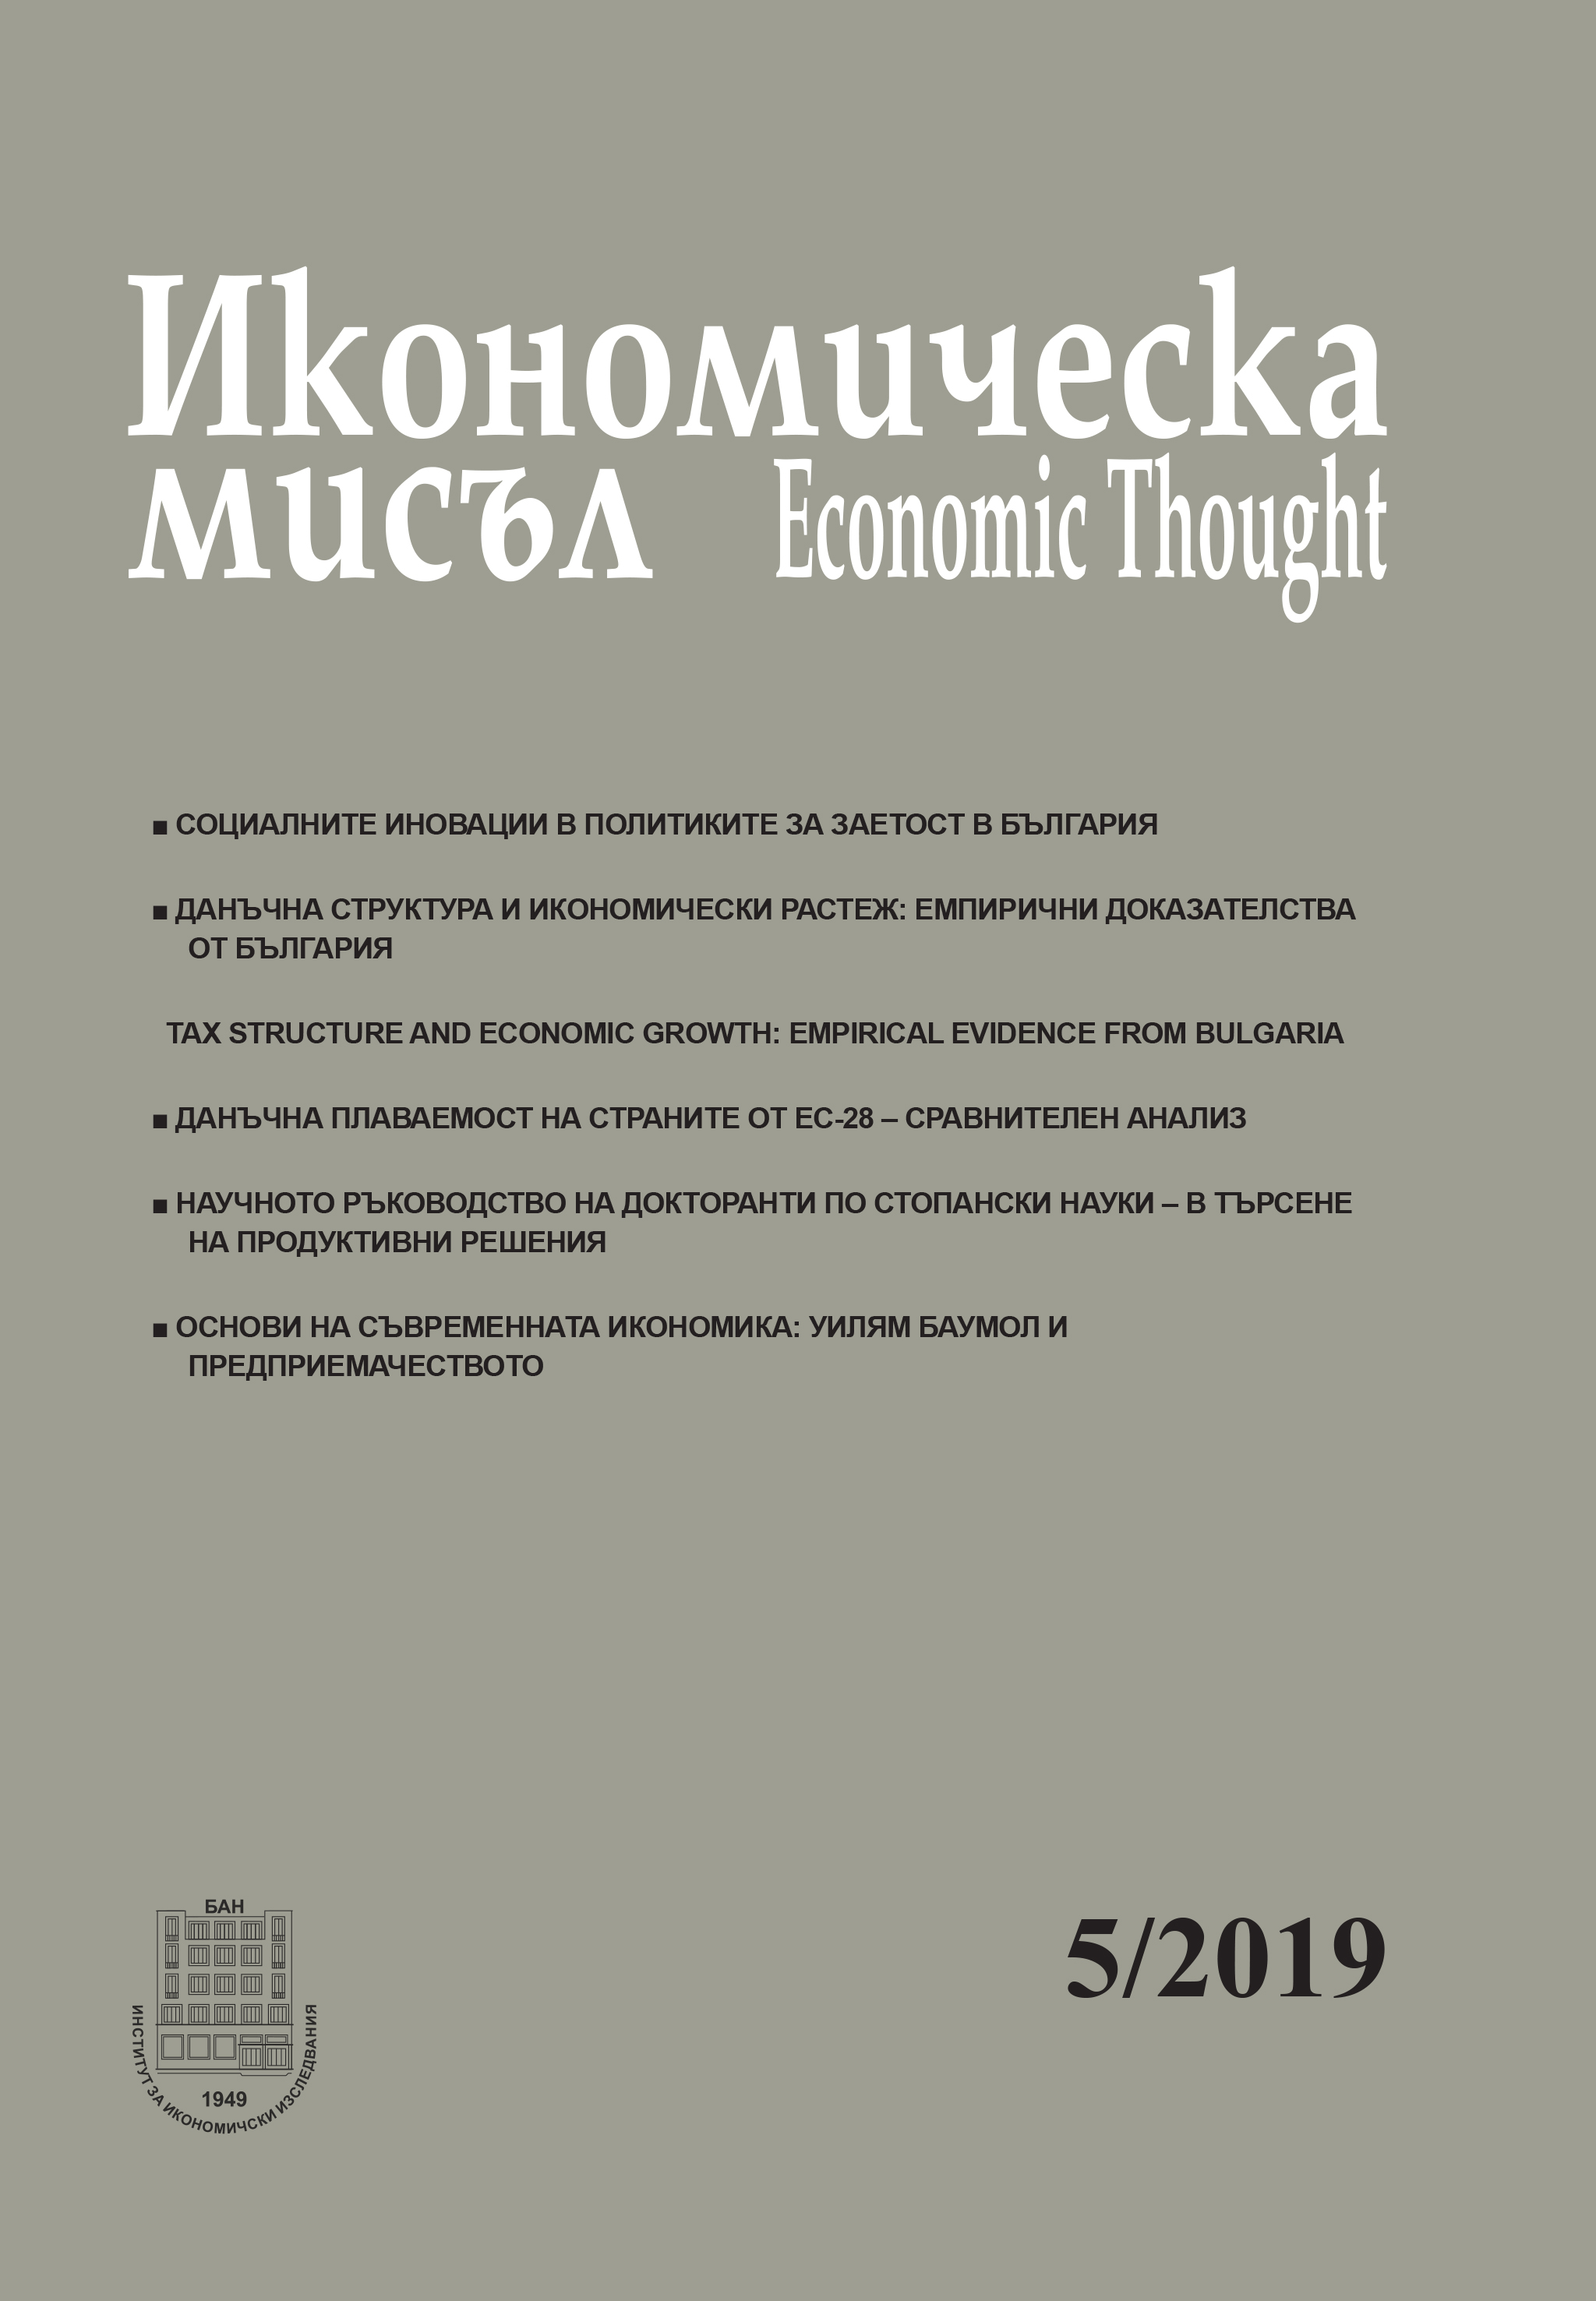 Данъчна структура и икономически растеж: емпирични доказателства от България